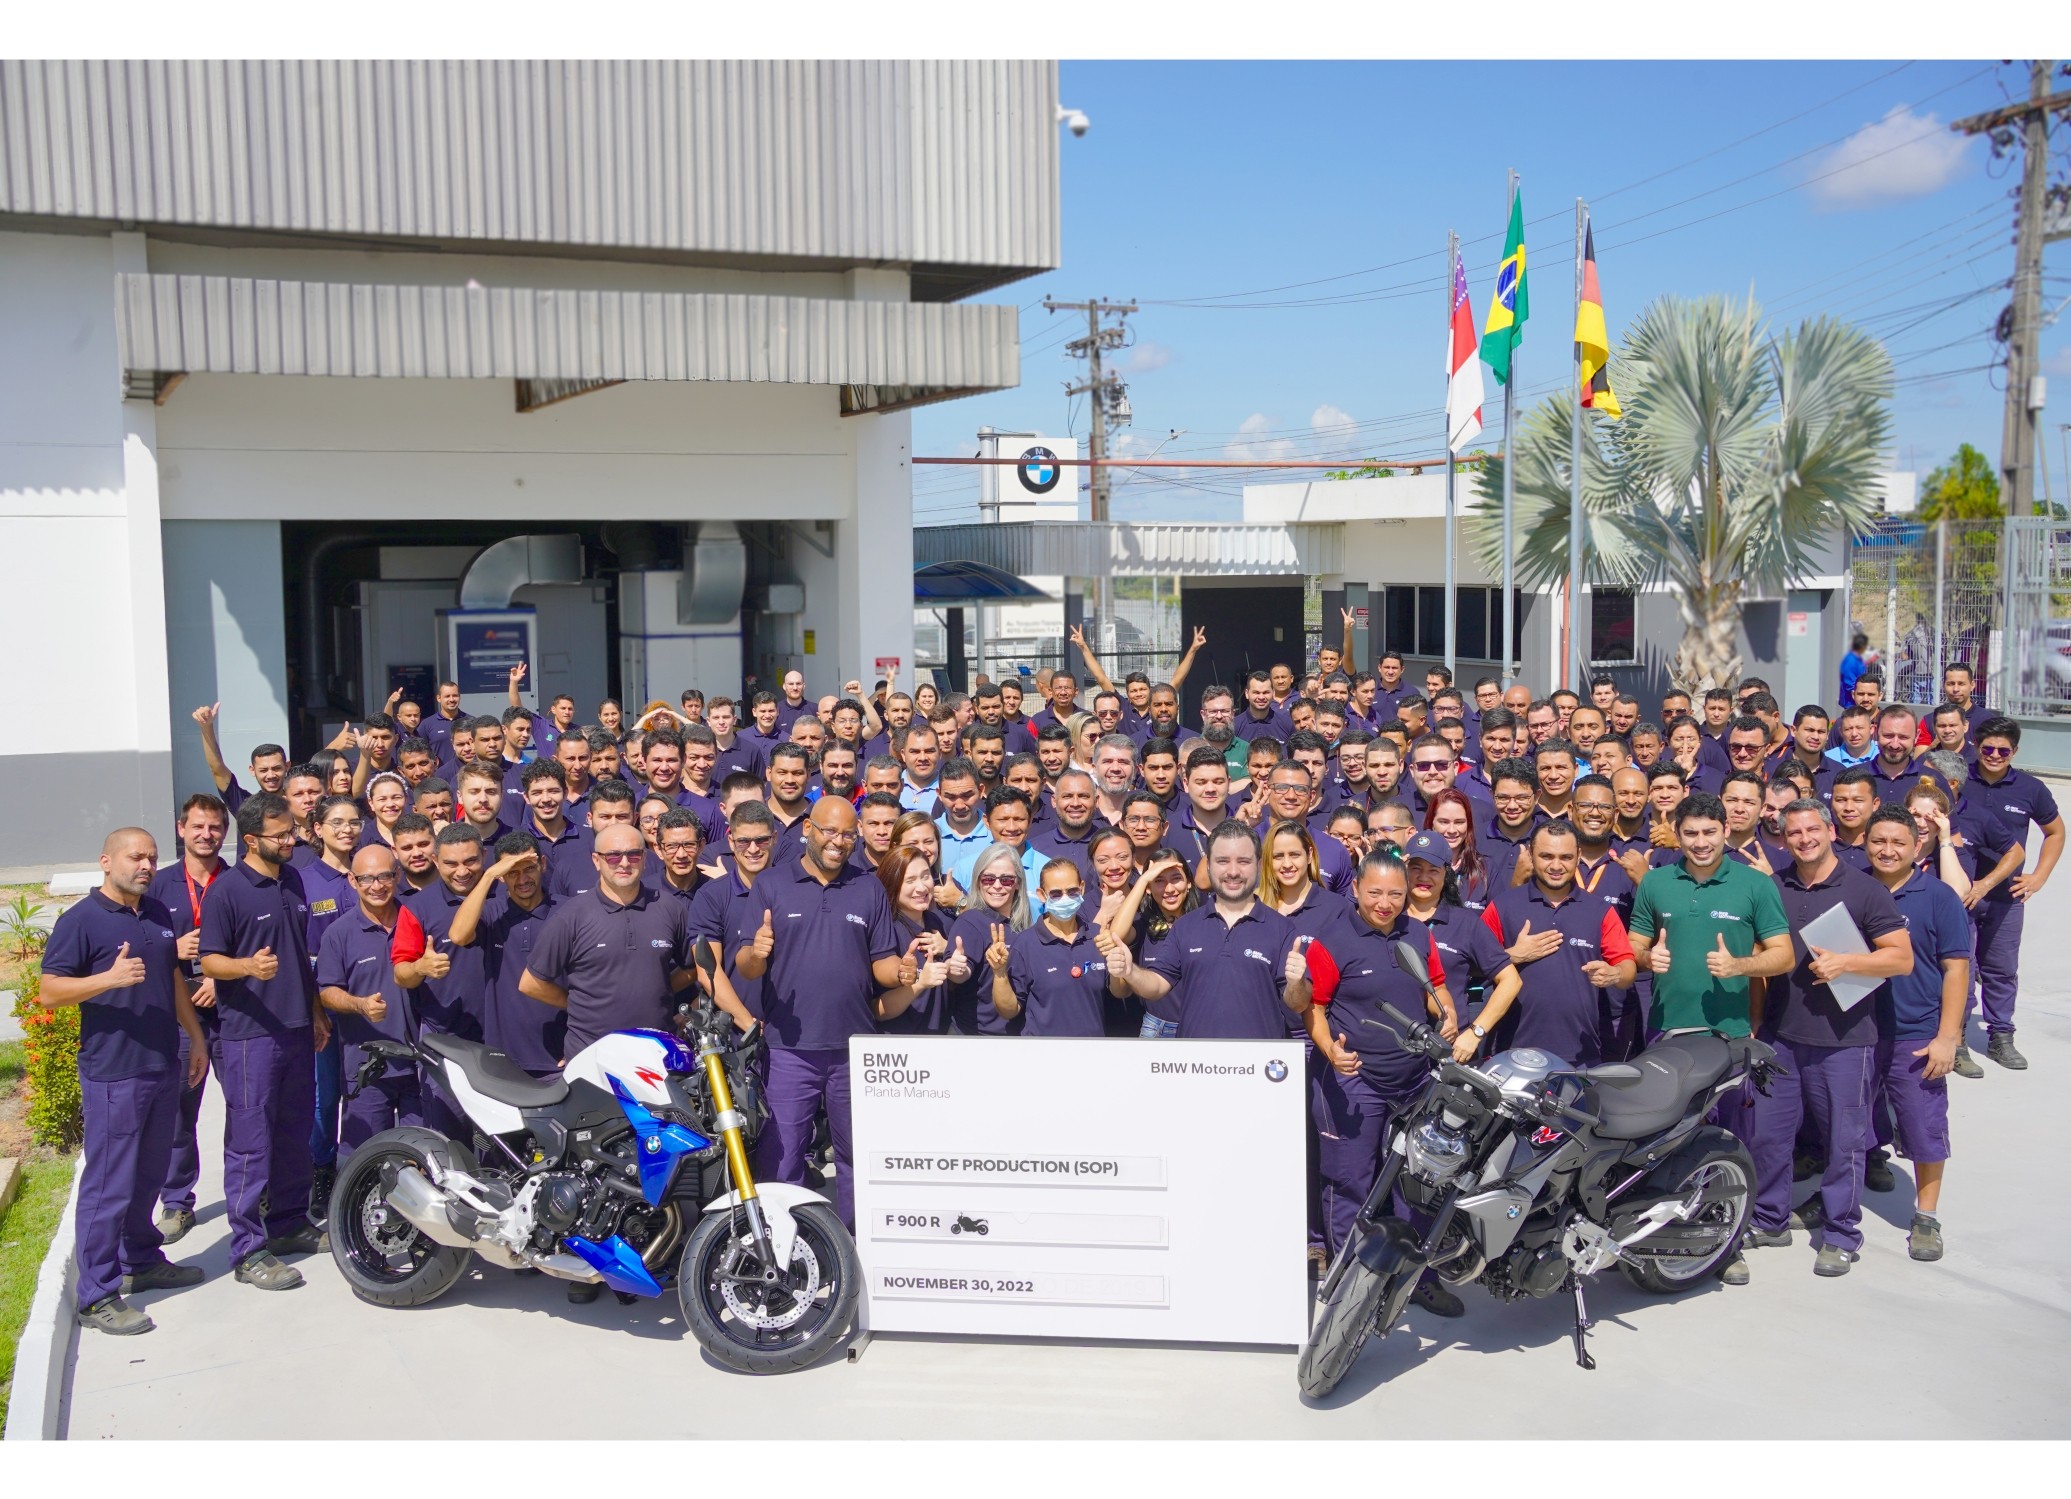 A fábrica de motocicletas do BMW Group em Manaus, que completou 6 anos em outubro, anunciou um investimento de R$ 50 milhões entre 2022 e 2025